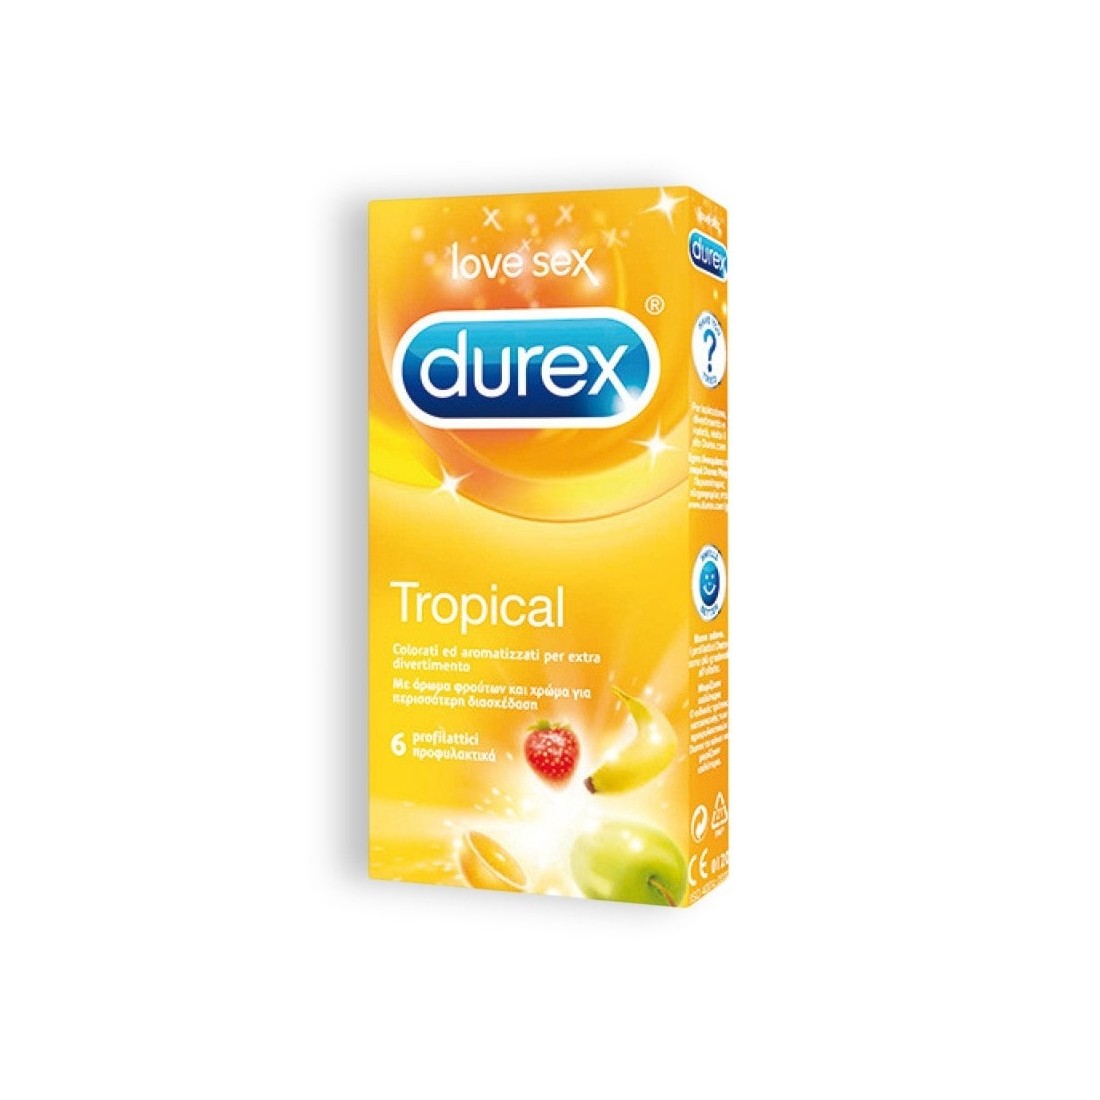 Preservativos Durex Tropical - 6 Unidades - PR2010333979